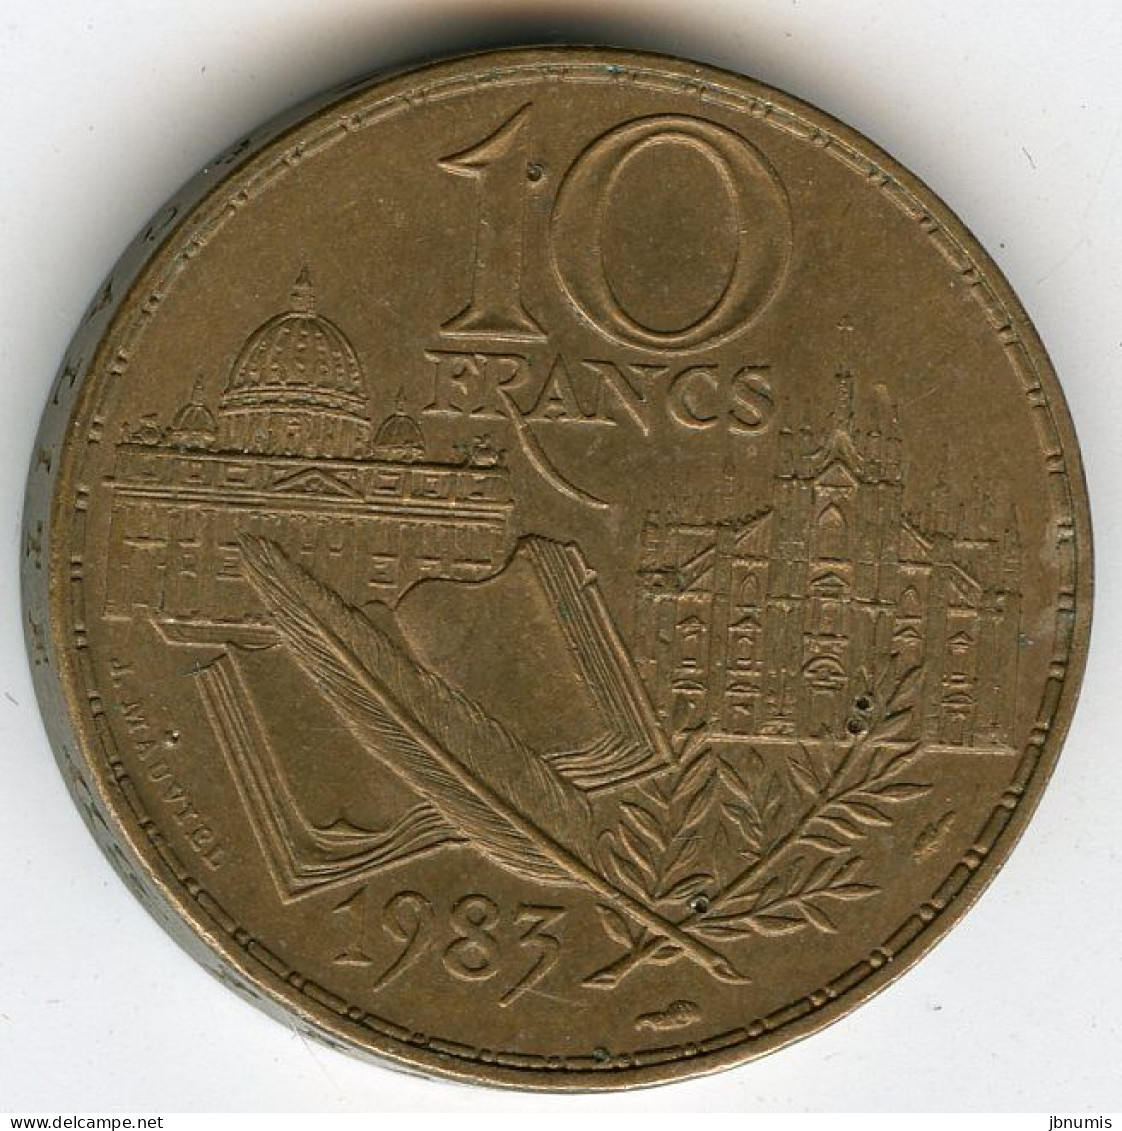 France 10 Francs 1983 Stendhal GAD 817 KM 953 - 10 Francs